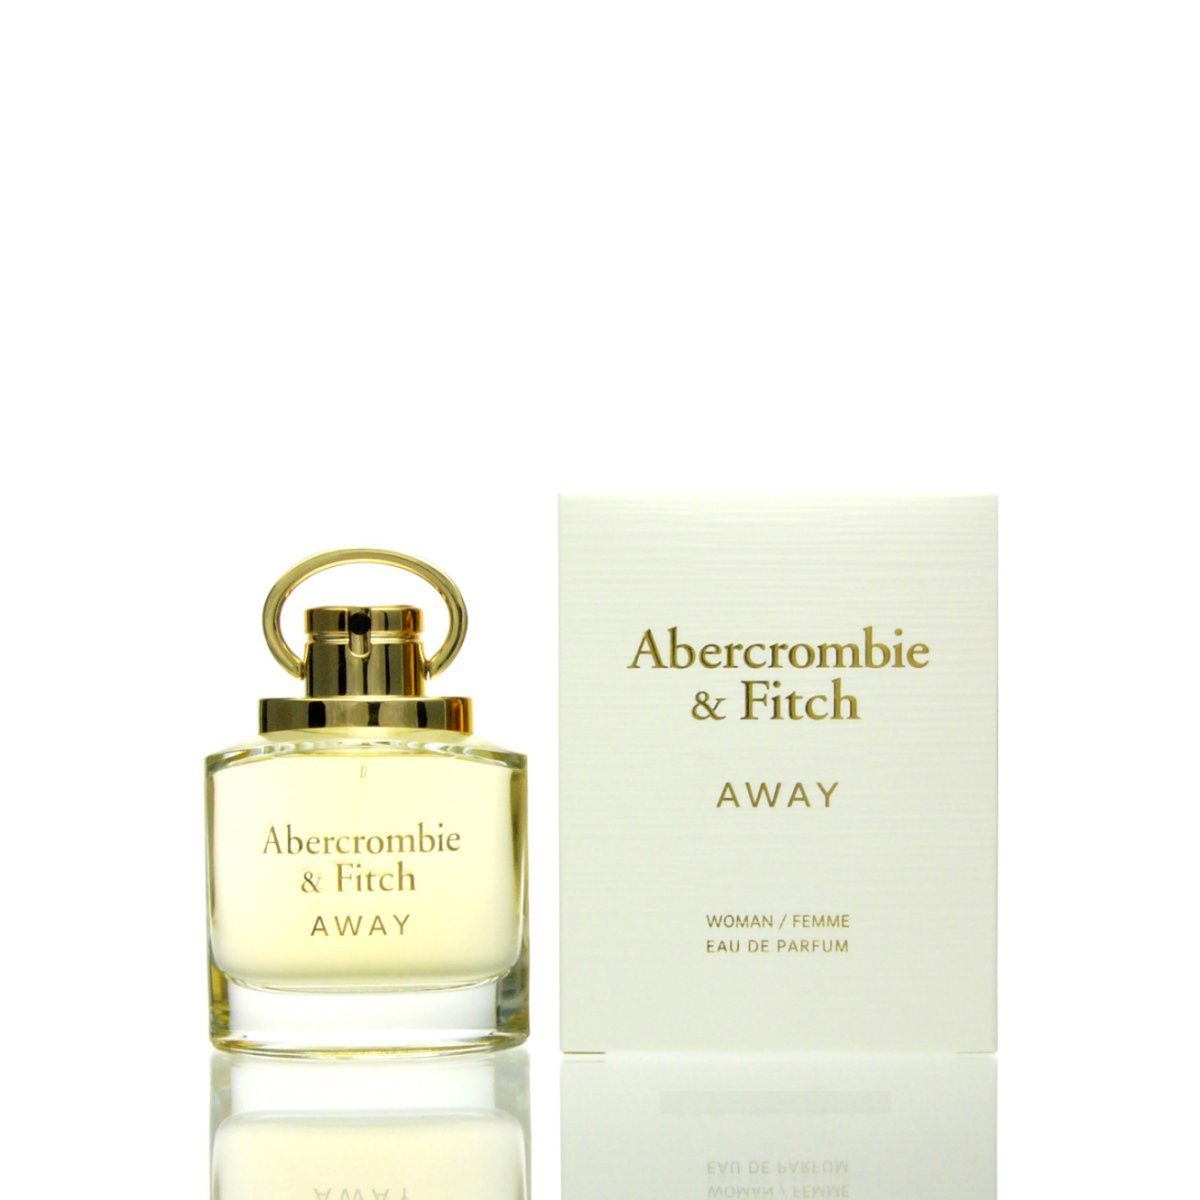 Abercrombie & Fitch Eau de Parfum Abercrombie & Fitch Away for her Eau de Parfum 50